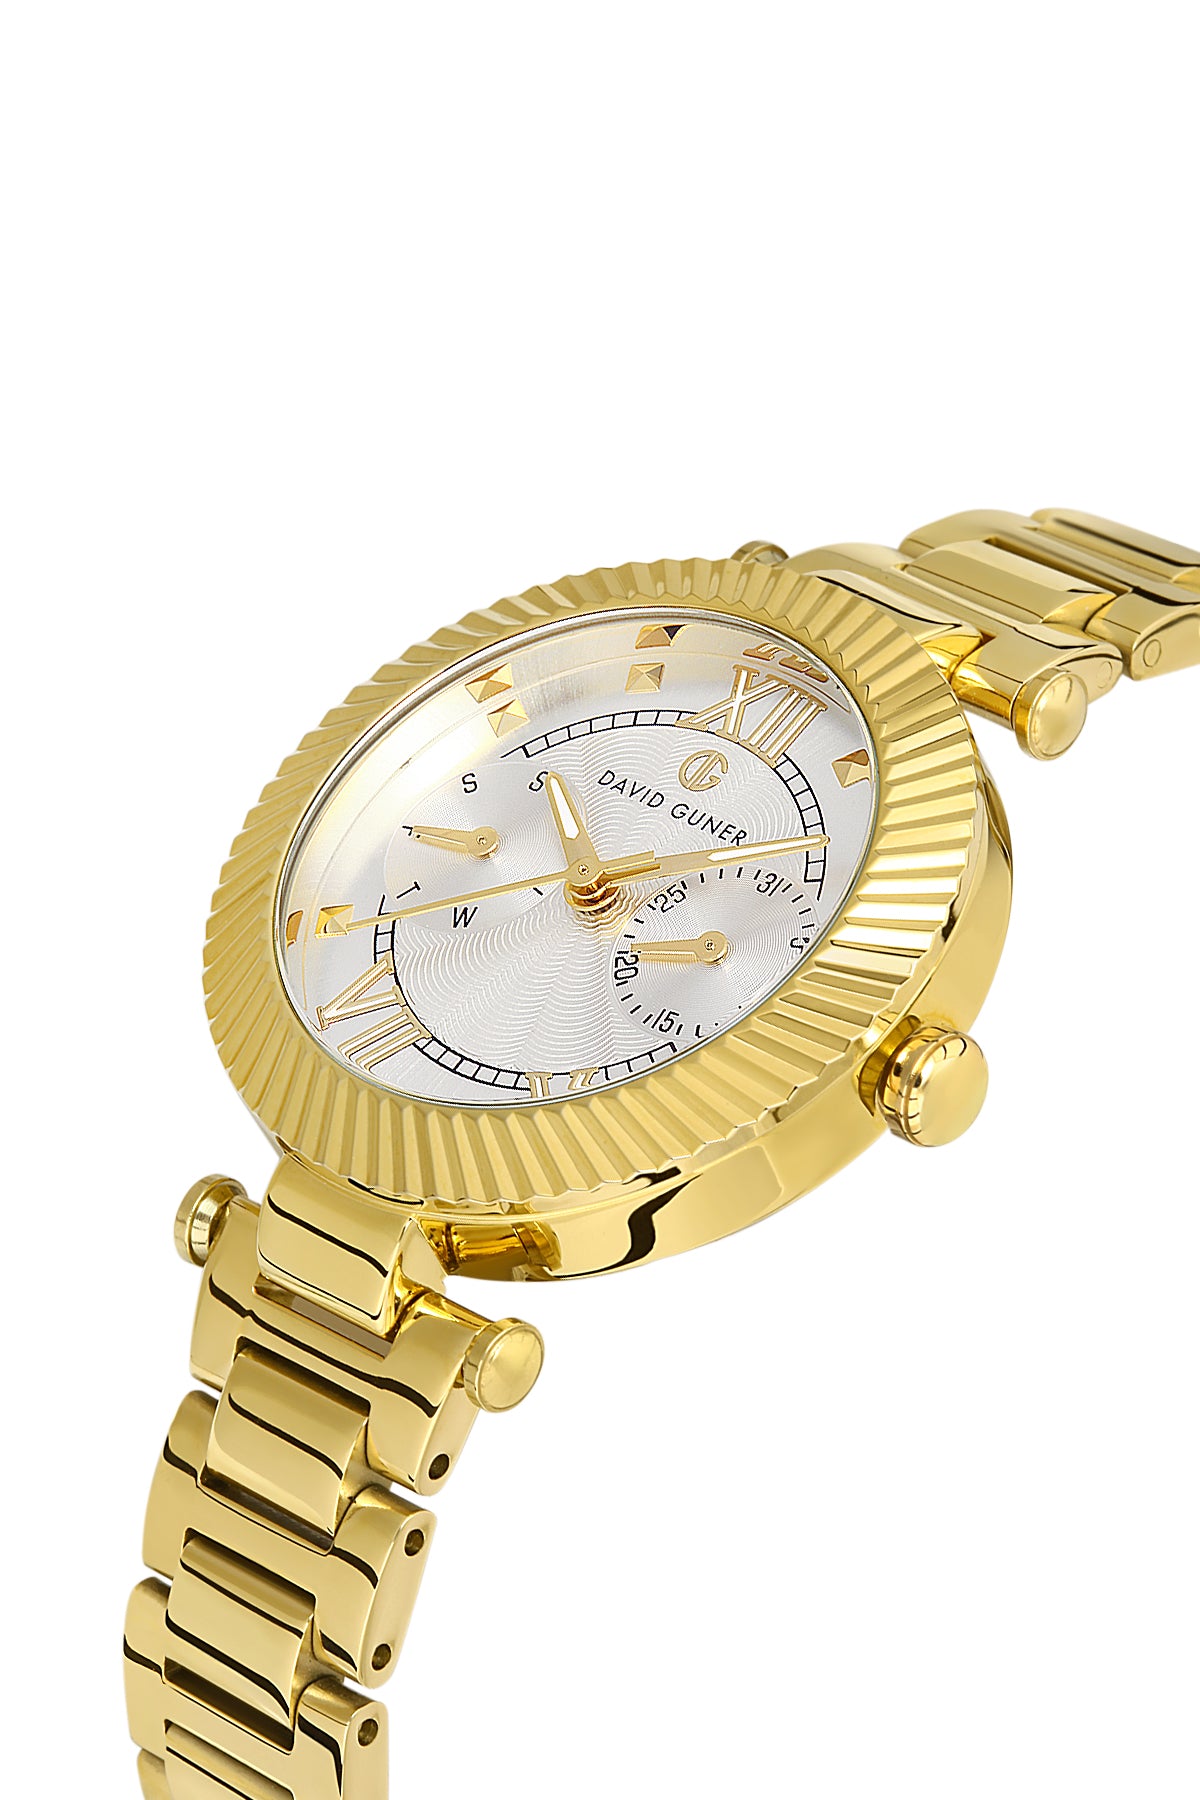 DAVID GUNER Silver Dial Yellow Coated Women's Wristwatch